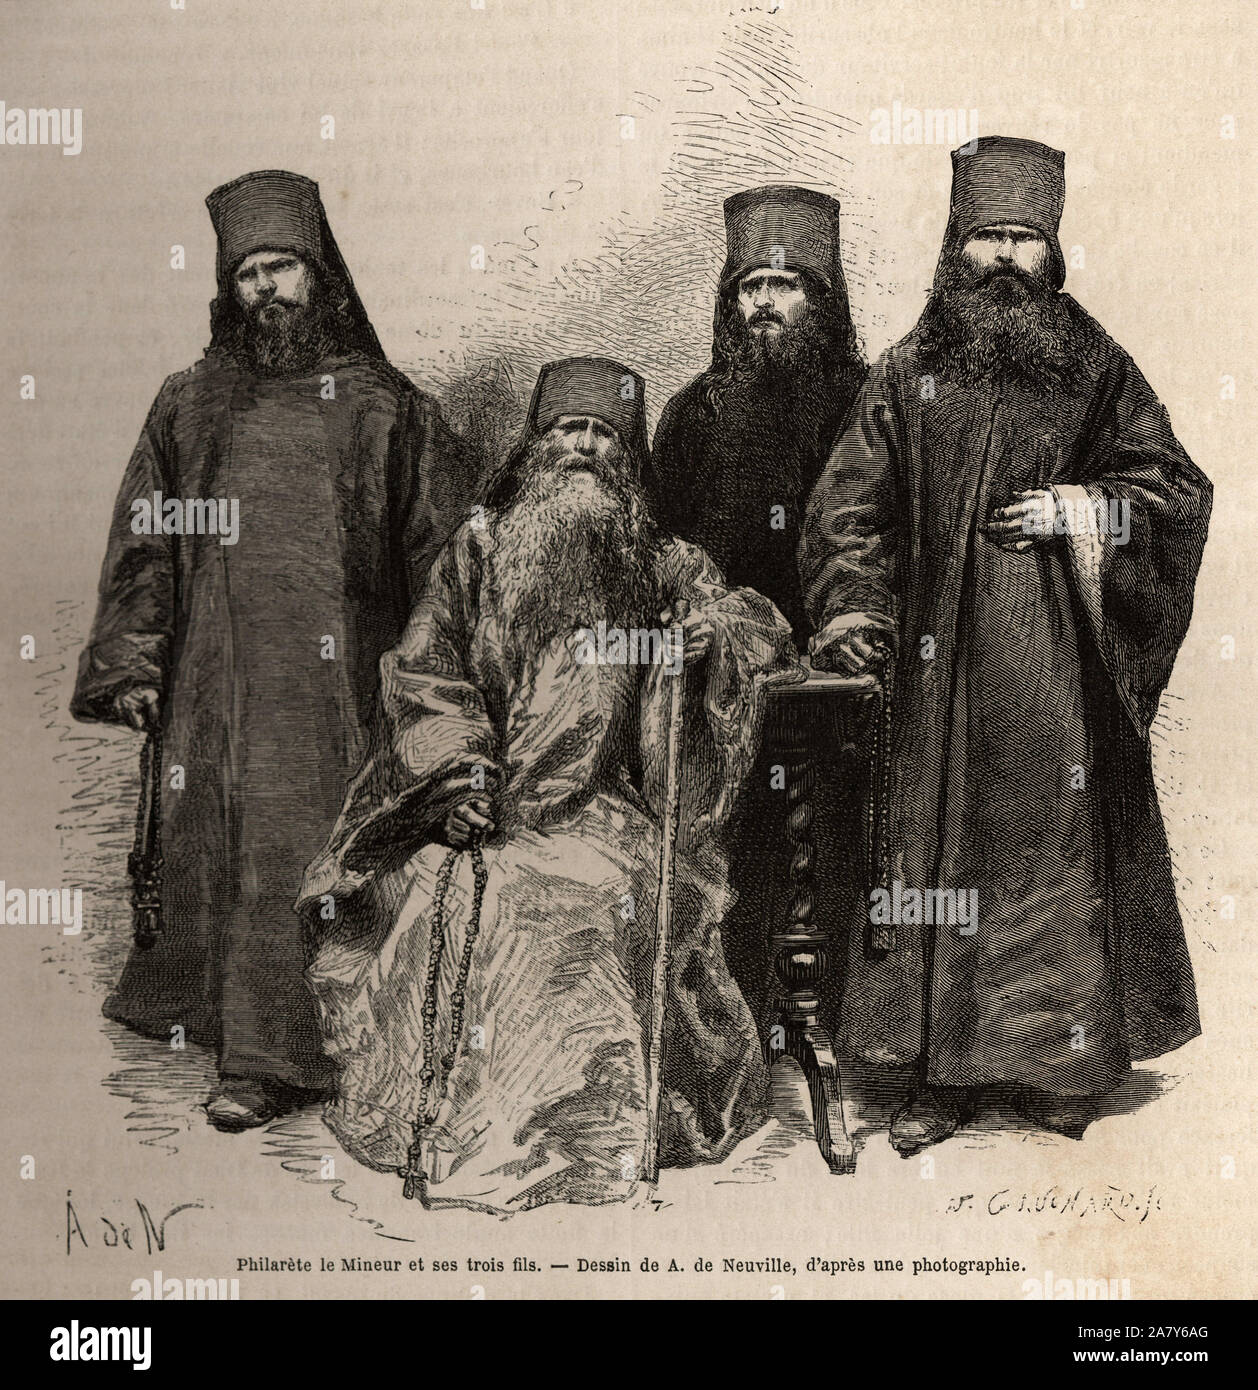 Philarete Ouchka, dit le mineur,( ne en 1803) ancien serf et moine mendiant, qui fit fortune en vendant des croix et des images pieuses, accompagne de Stock Photo